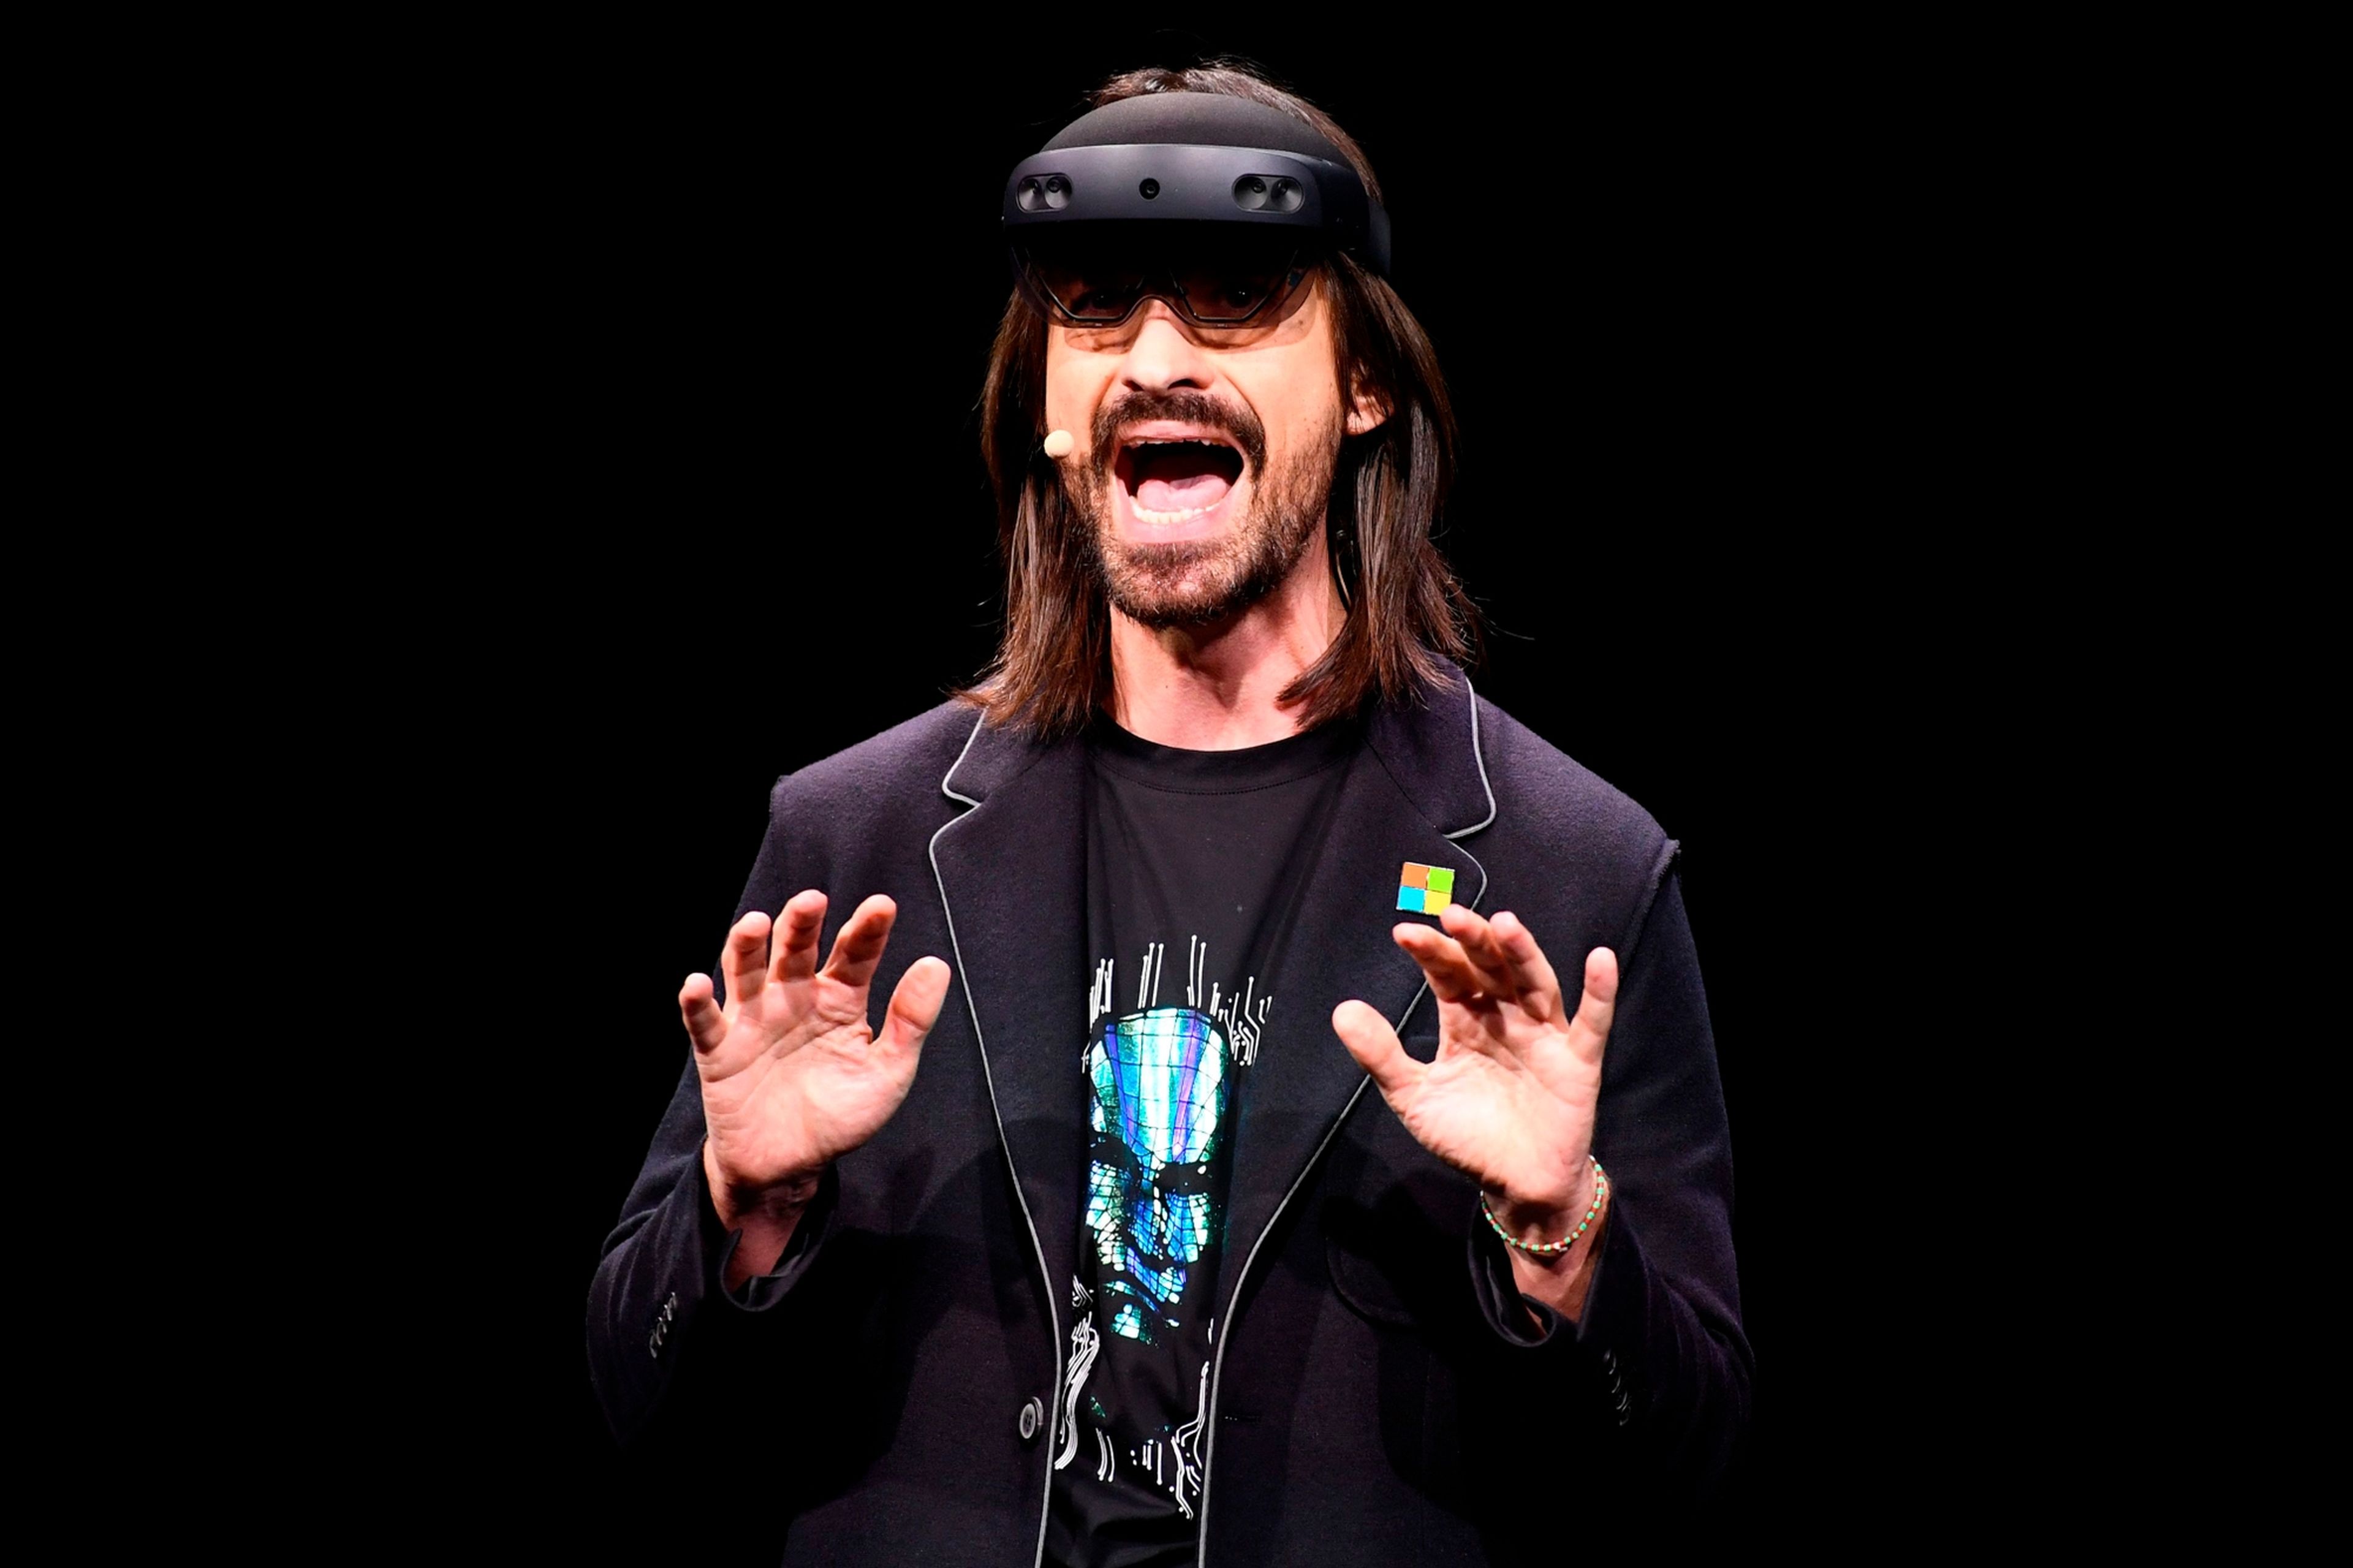 Alex Kipman, cocreador de las gafas de realidad aumentada HoloLens y supervisor de la división de Microsoft responsable de gran parte del juego del metaverso.